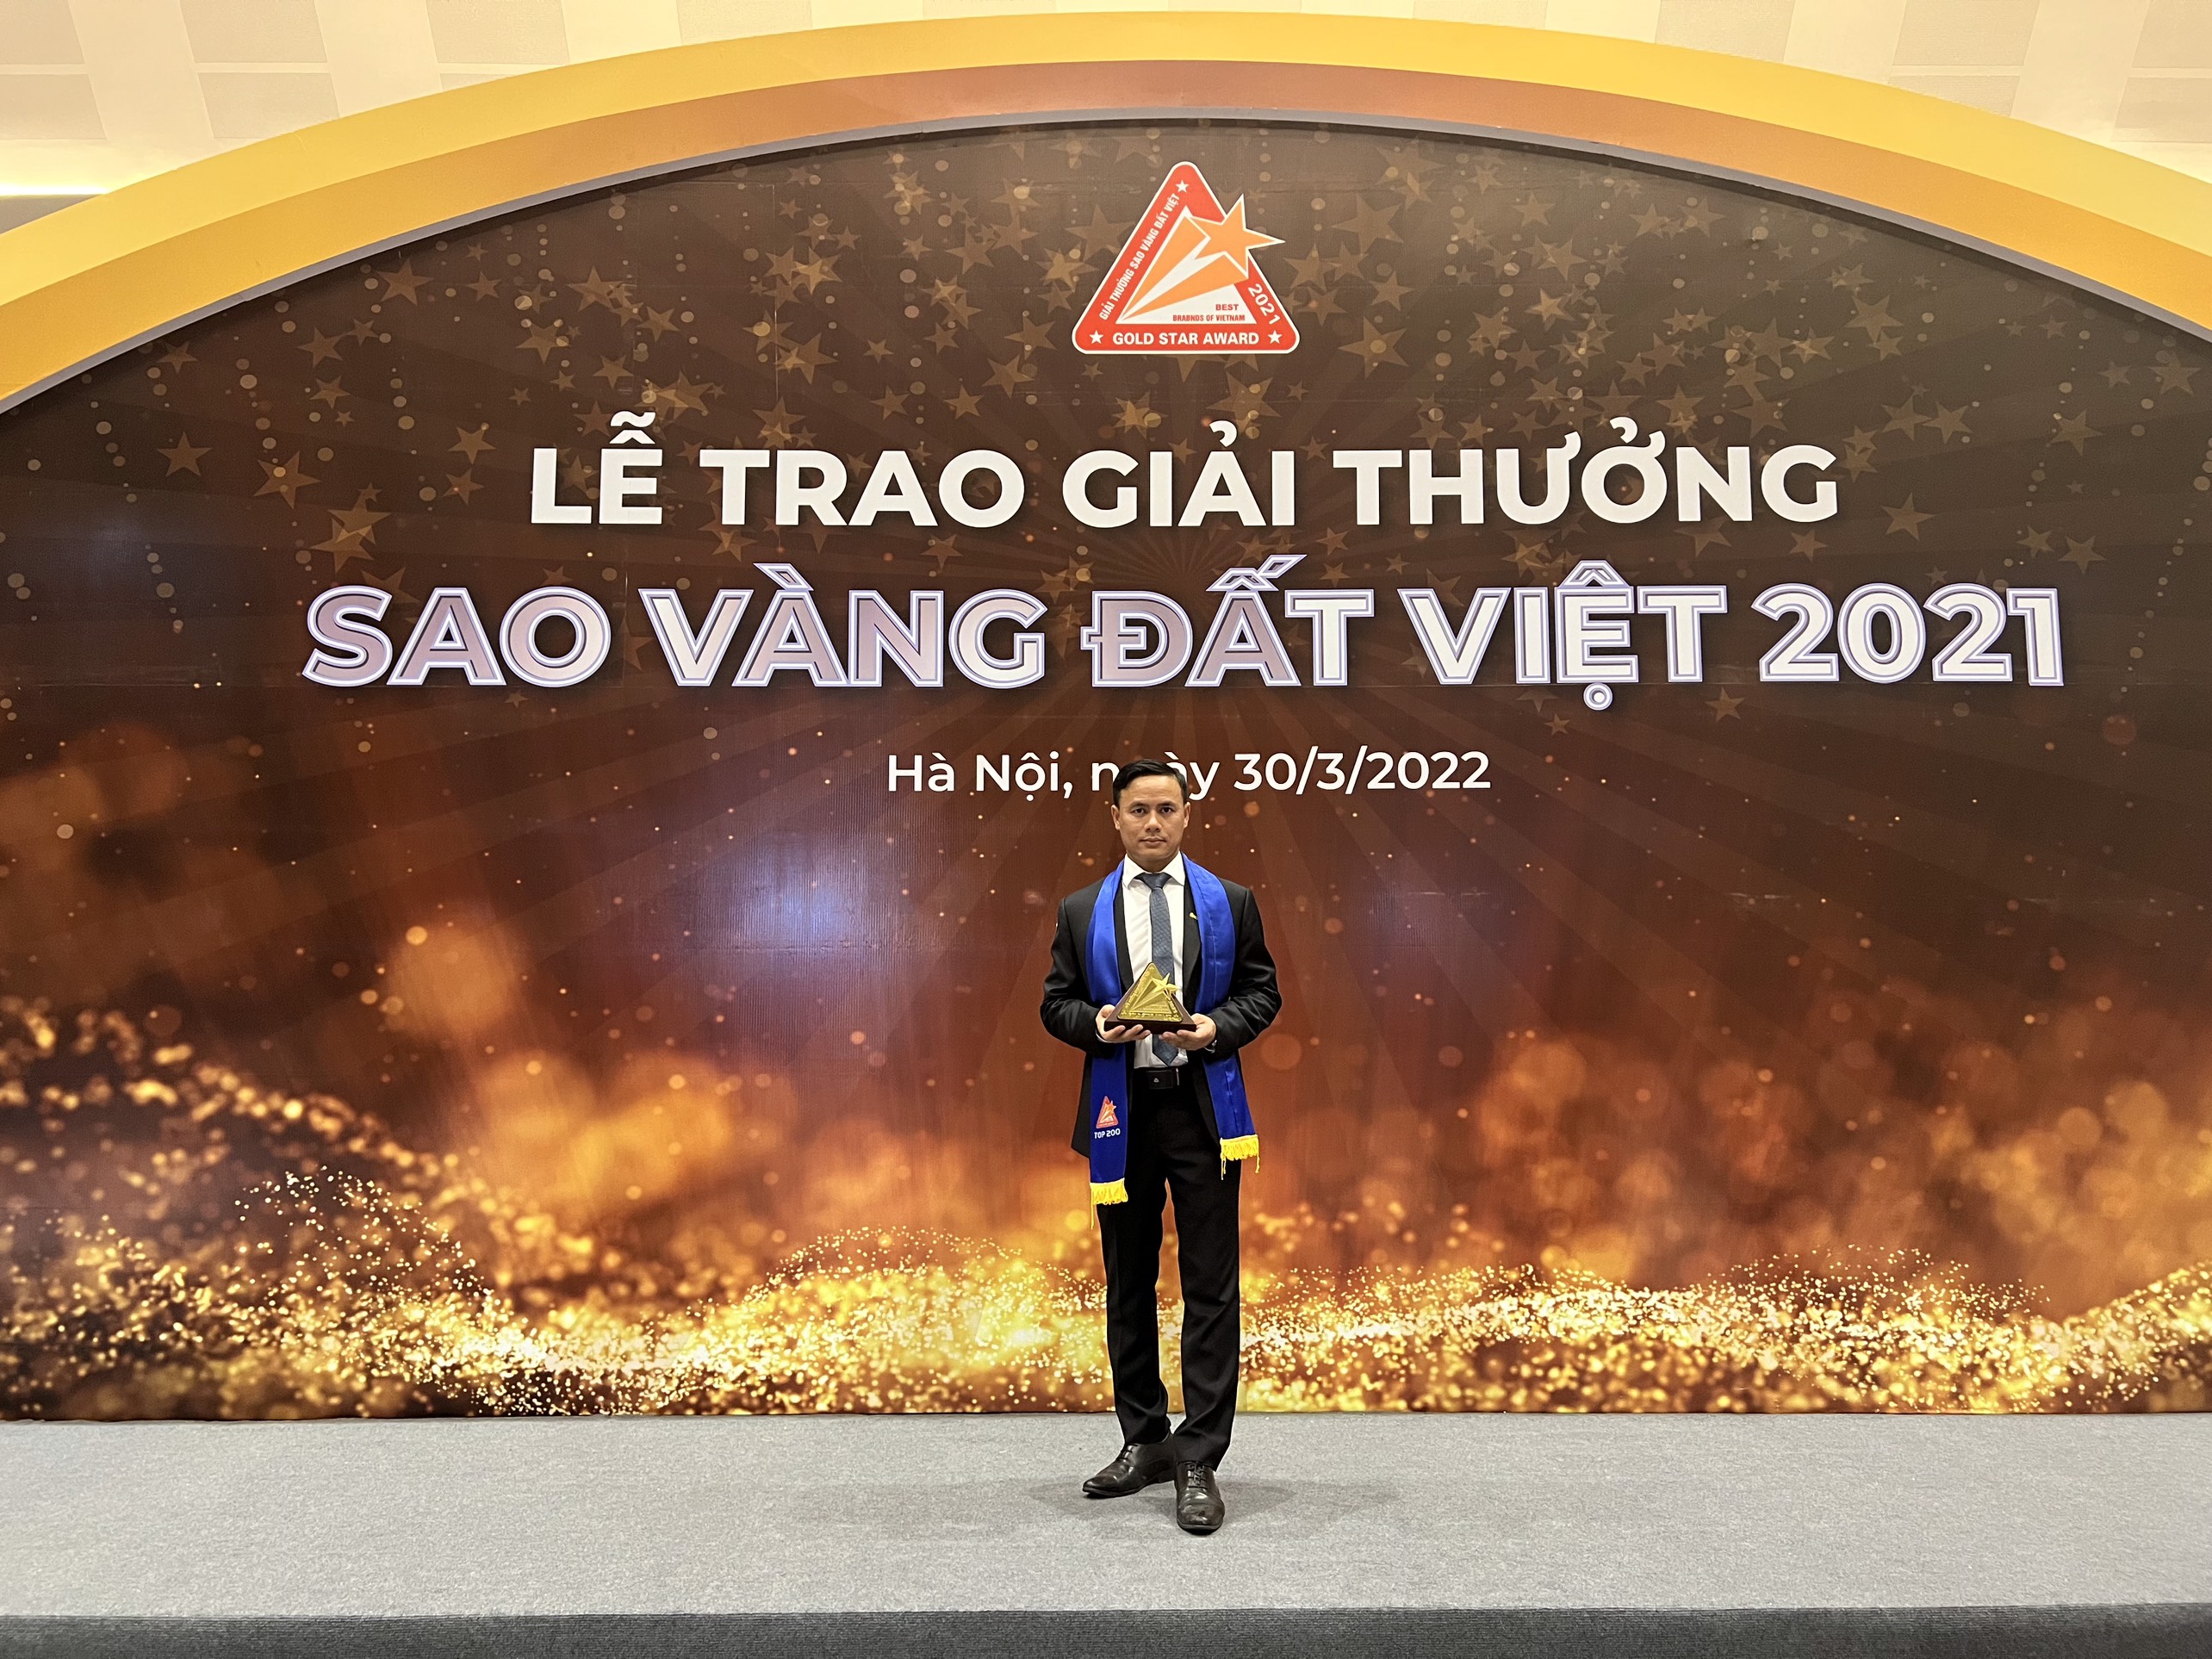 "Cá chép hóa rồng" - Haseca suất sắc nhận giải thưởng Sao Vàng Đất Việt 2021